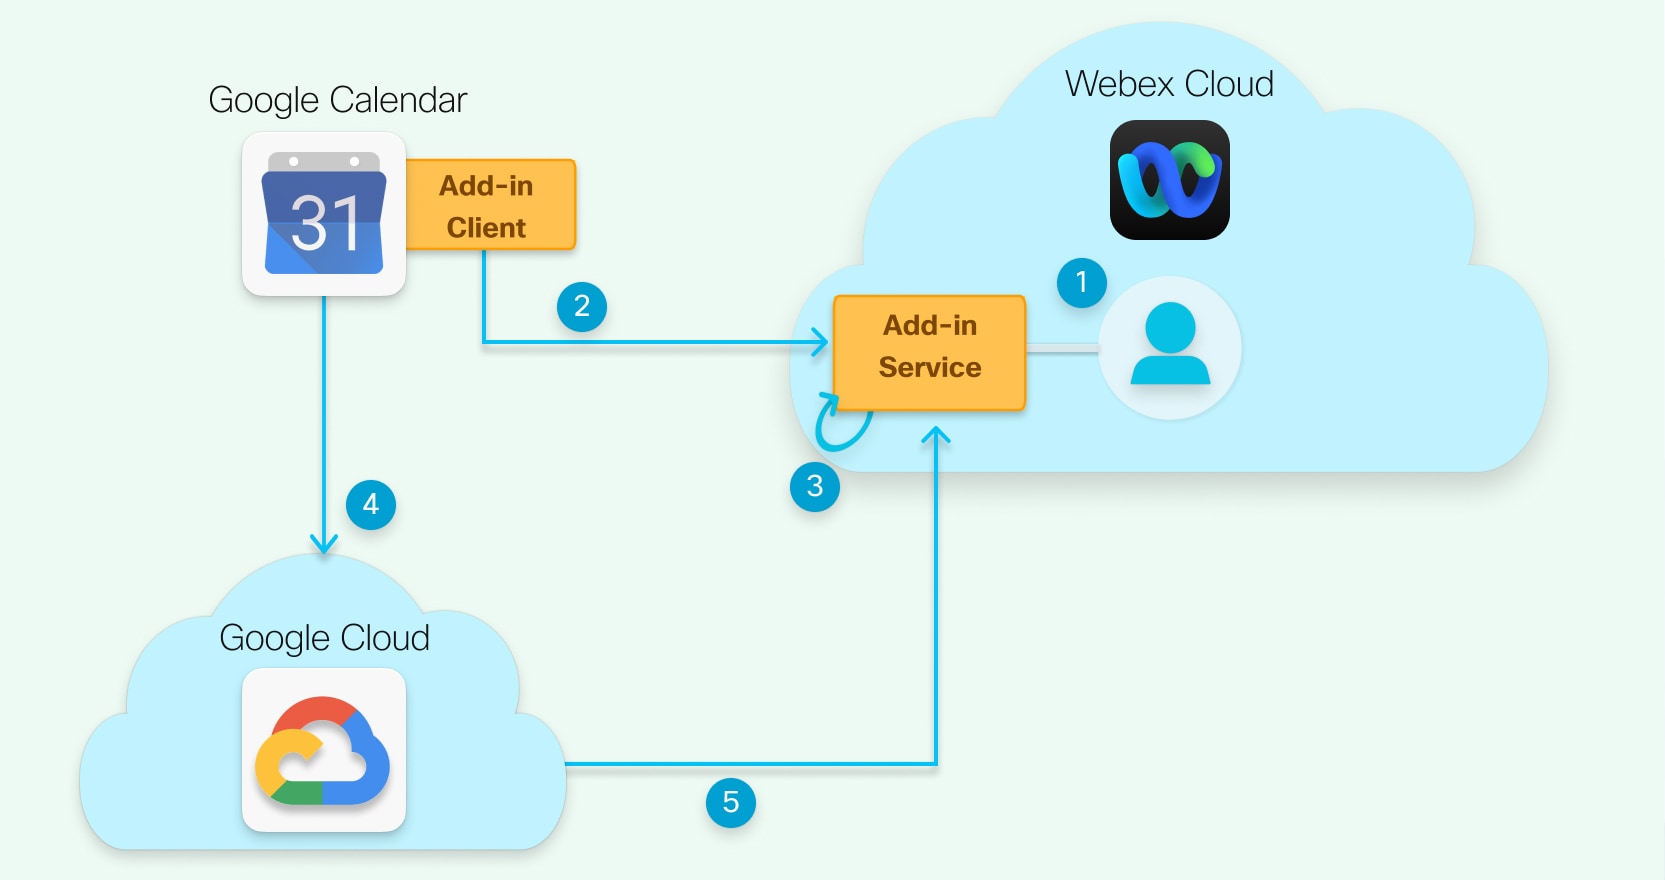 Az architektúra diagramja a Google felhőjét, a Webex felhőt és a Google Naptár klienst mutatja, számozott nyilakkal, amelyek összekapcsolják őket.